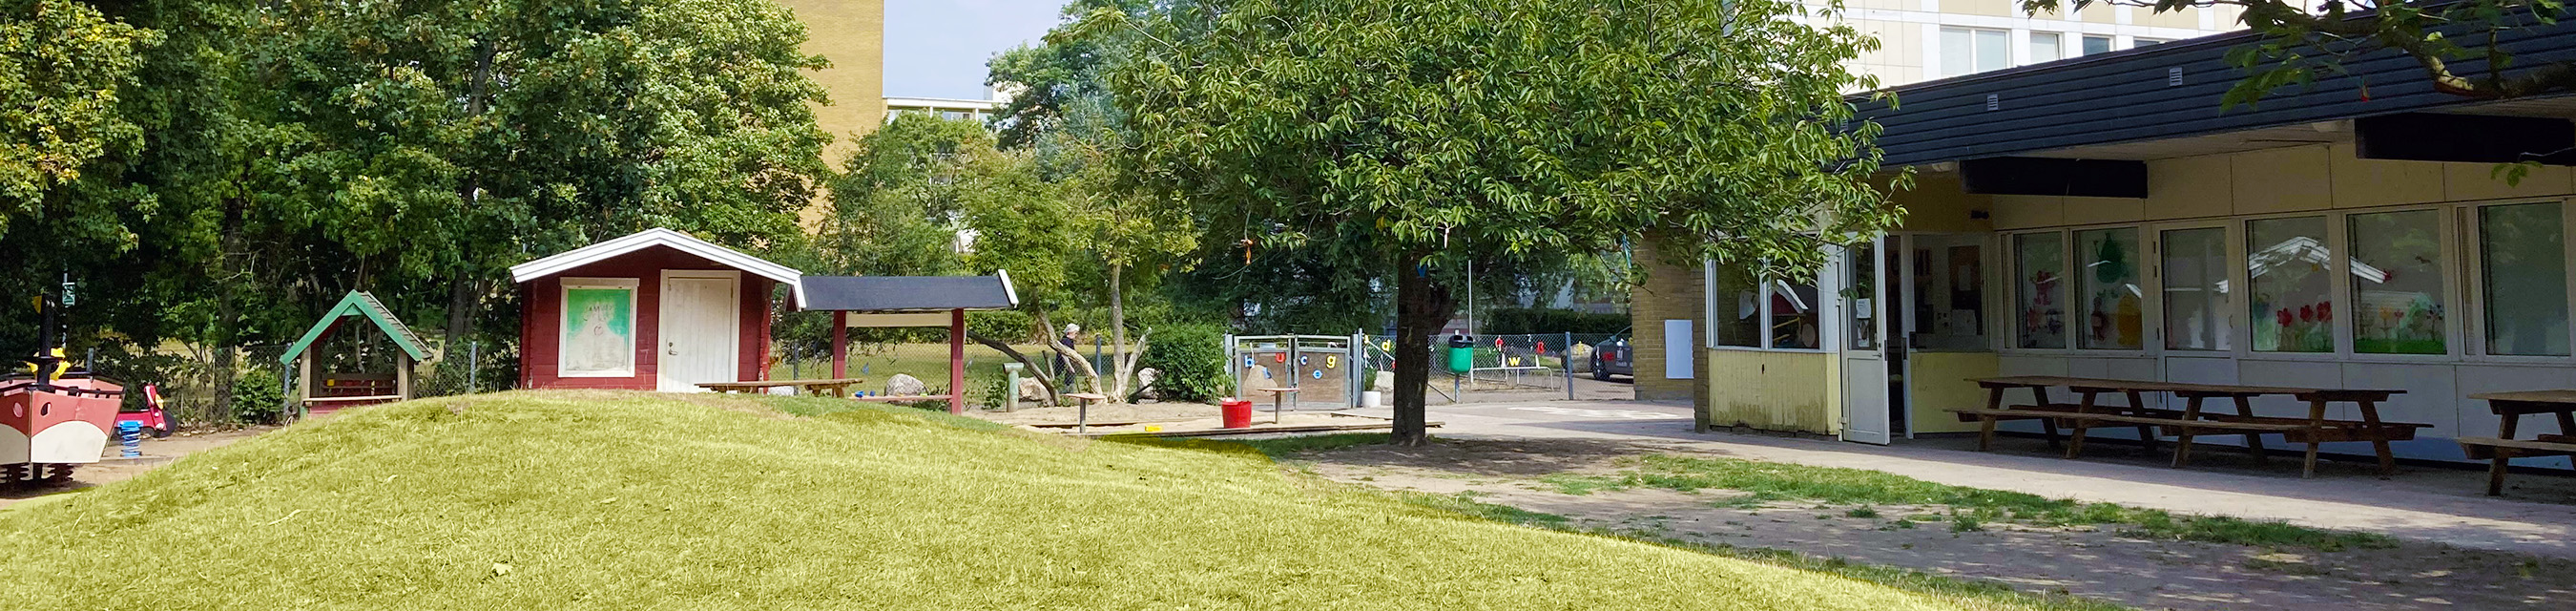 Almgårdens förskola har en gård som inbjuder till lek och ligger nära både en park och ett grönområde.